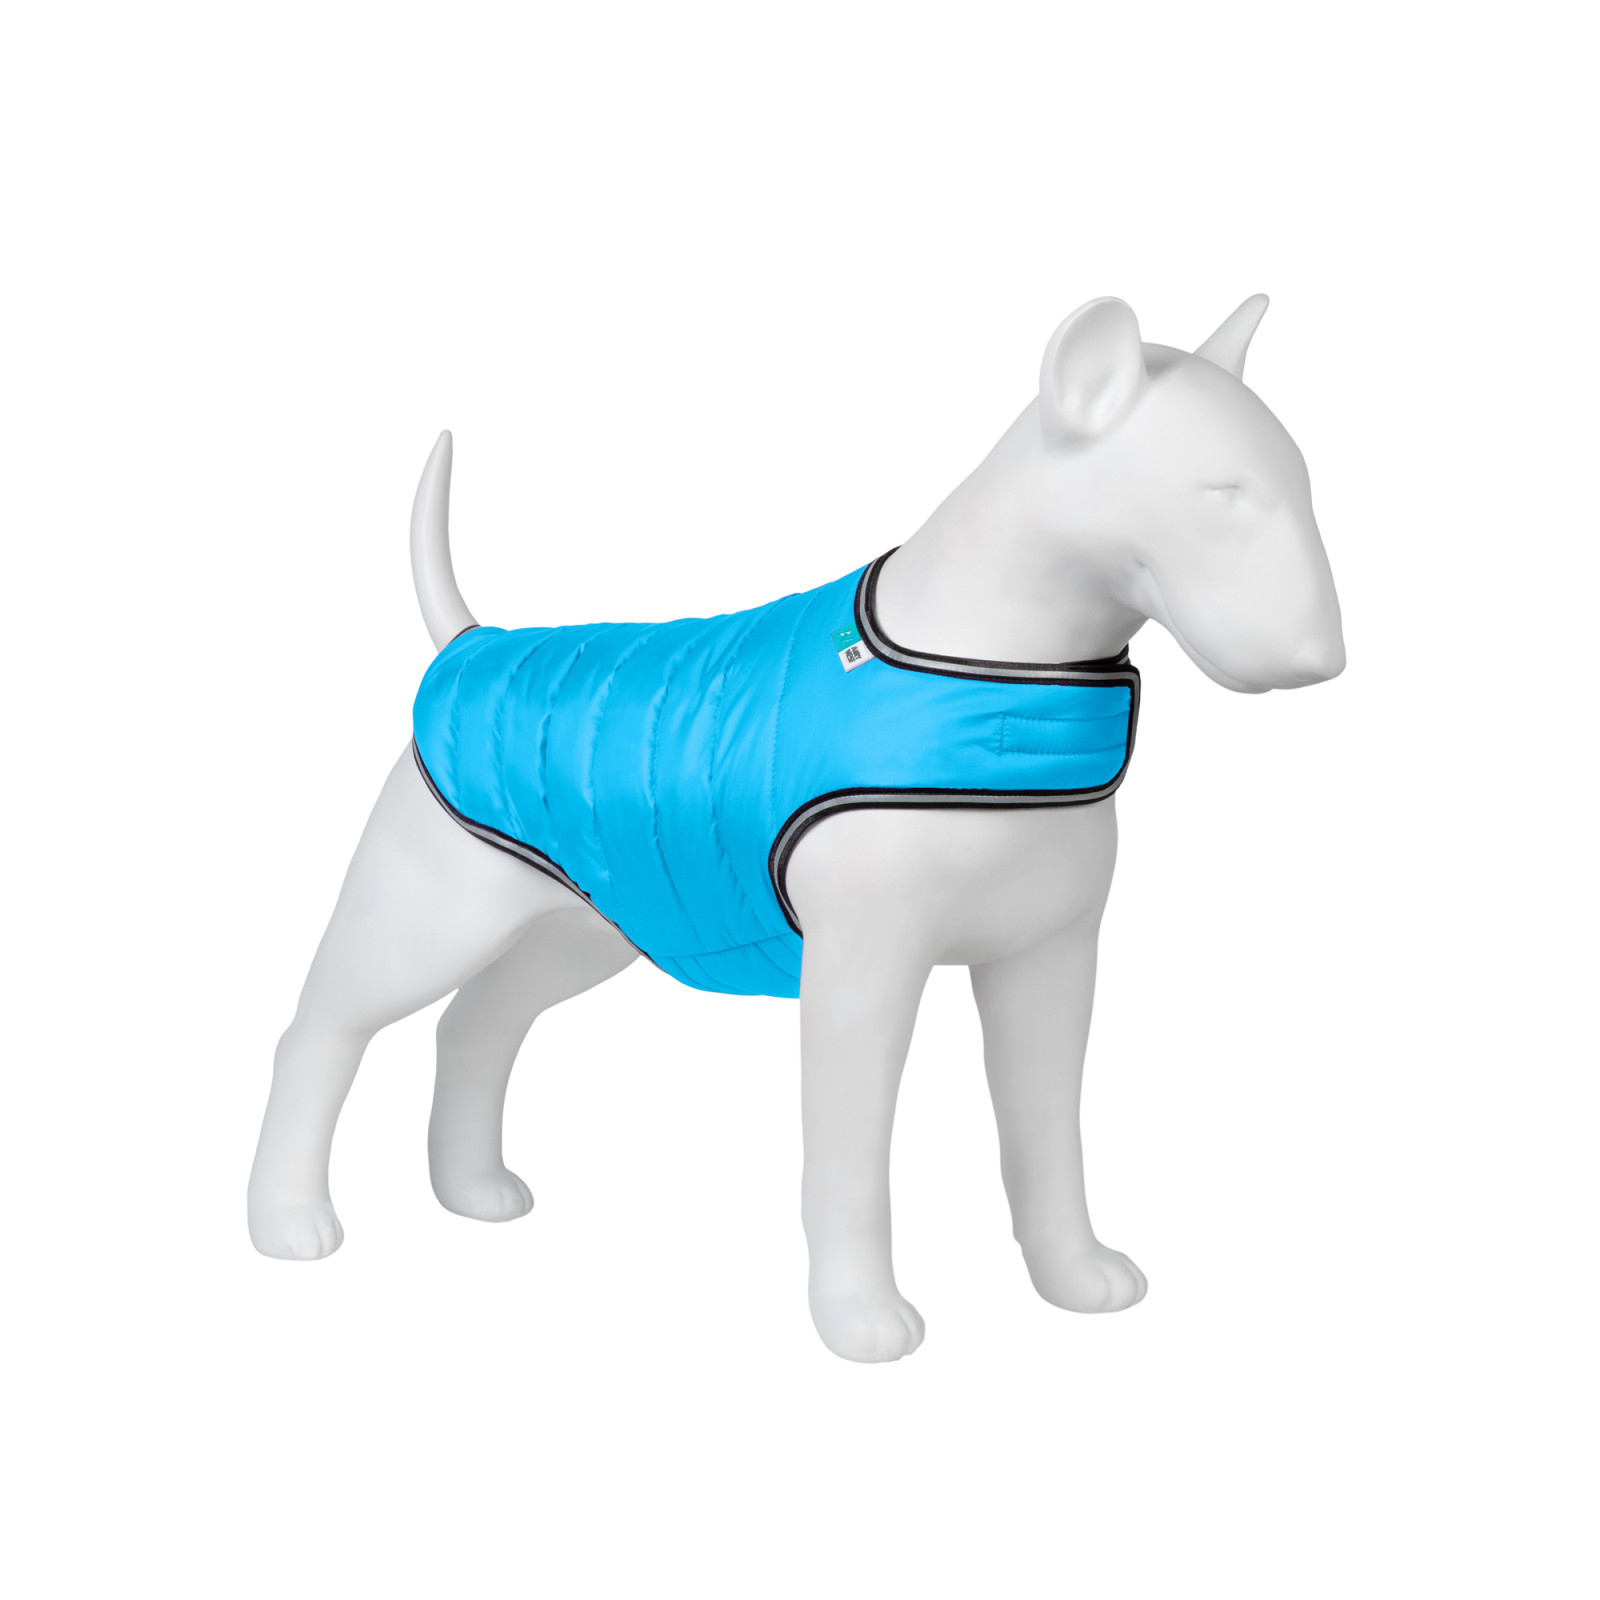 Курточка для животных Airy Vest S голубая (15422)